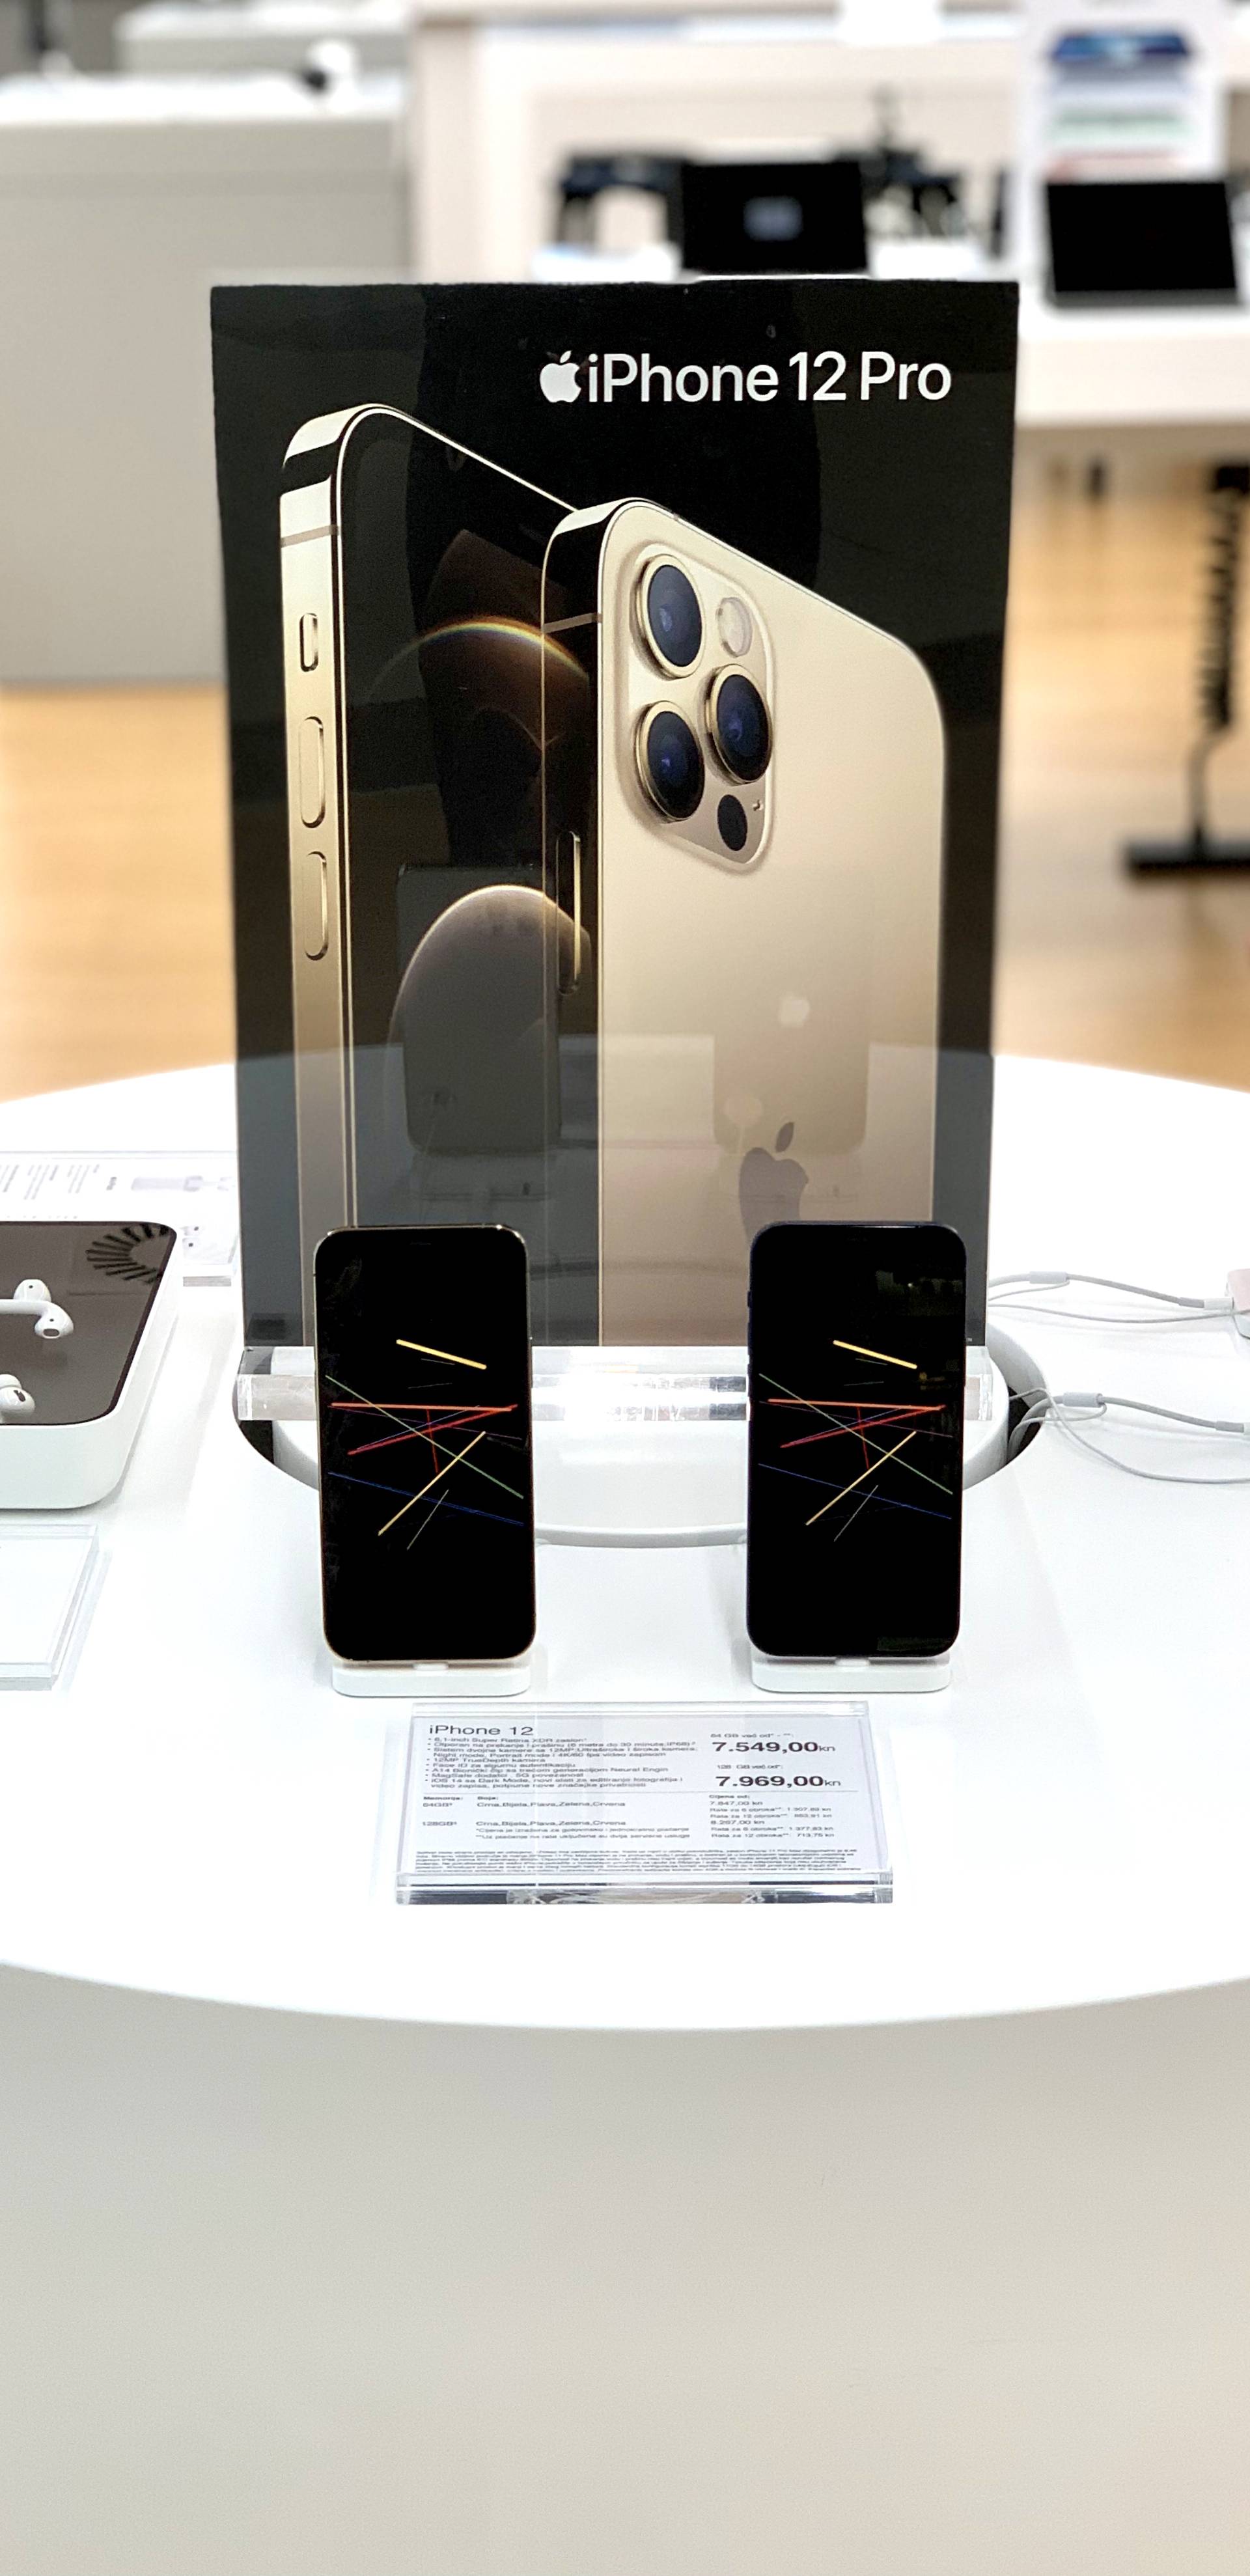 Dobrodošli u novu eru iPhonea: Apple iPhone 12, iPhone 12 Pro i iPad Air 4 od sada su dostupni